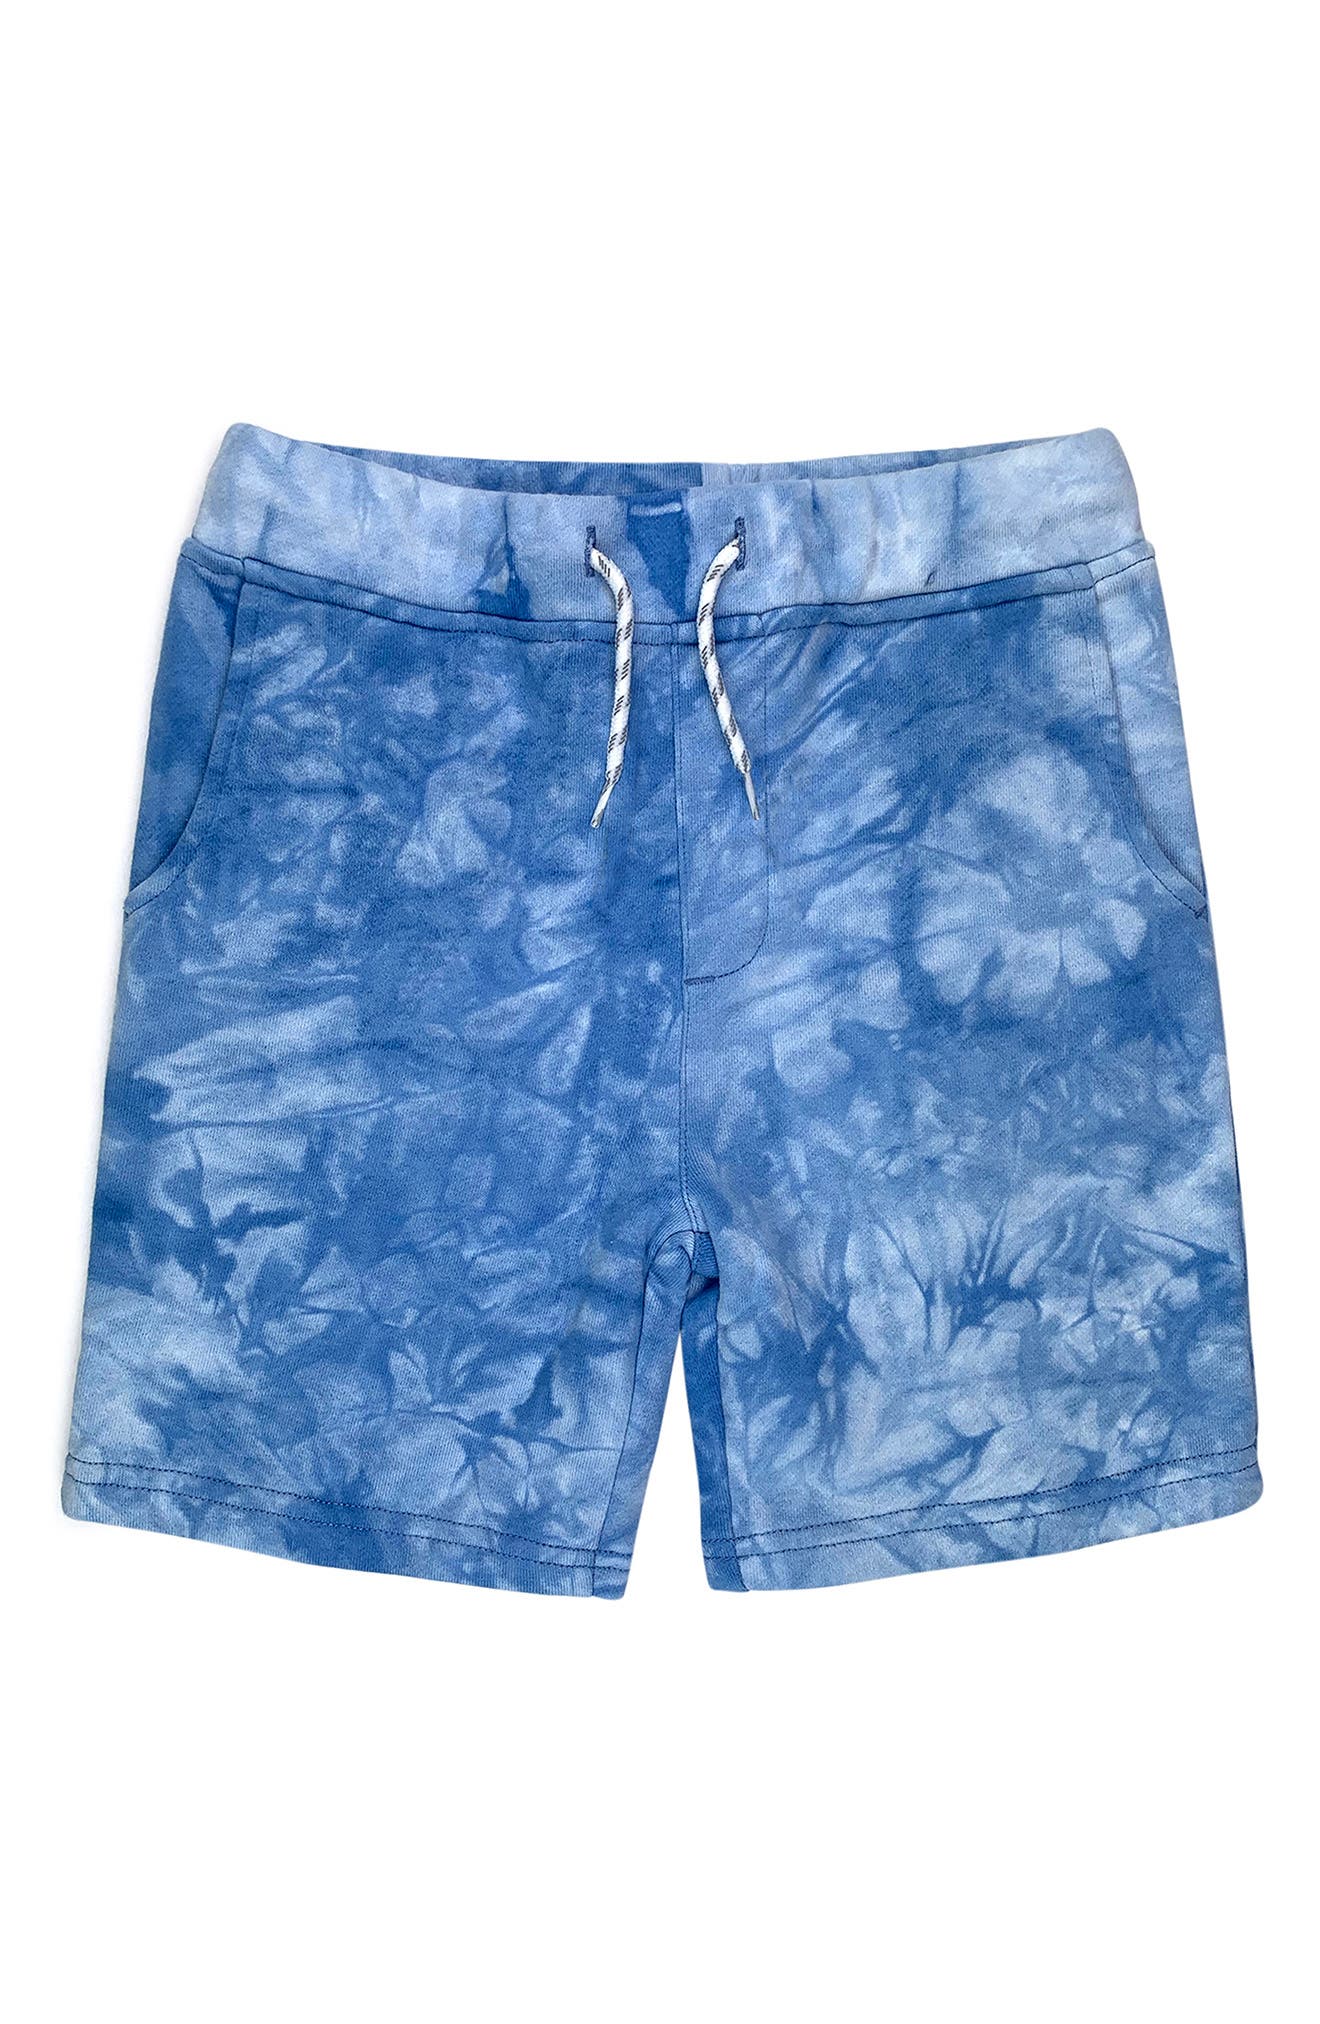 Mans Dear Evan Hansen Gifts Adult Drawstring Surf Shorts